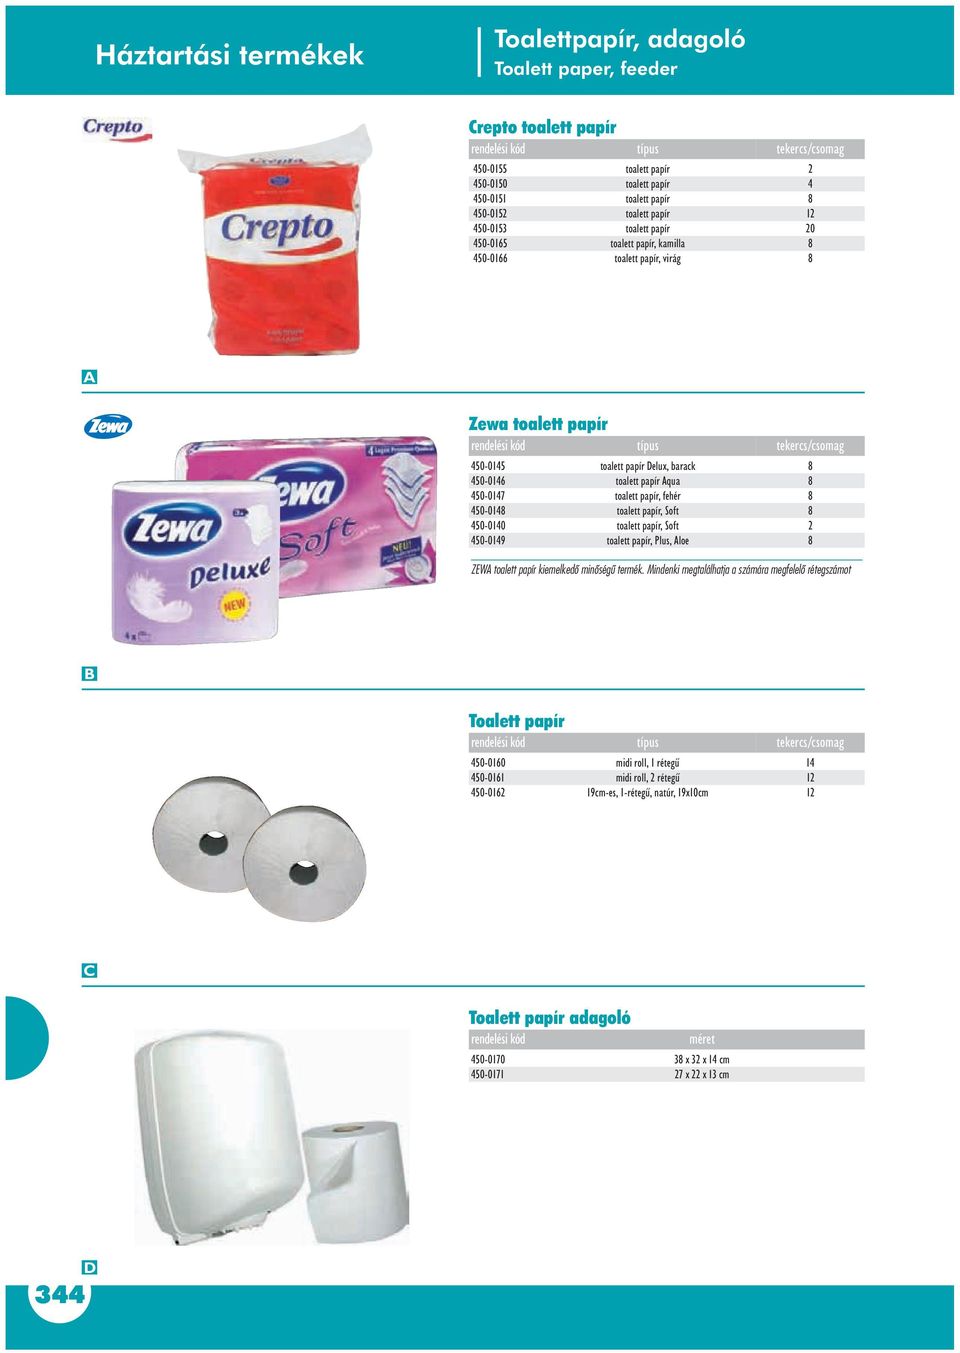 barack toalett papír qua toalett papír, fehér toalett papír, Soft toalett papír, Soft toalett papír, Plus, loe ZEW toalett papír kiemelkedô minôségû termék.